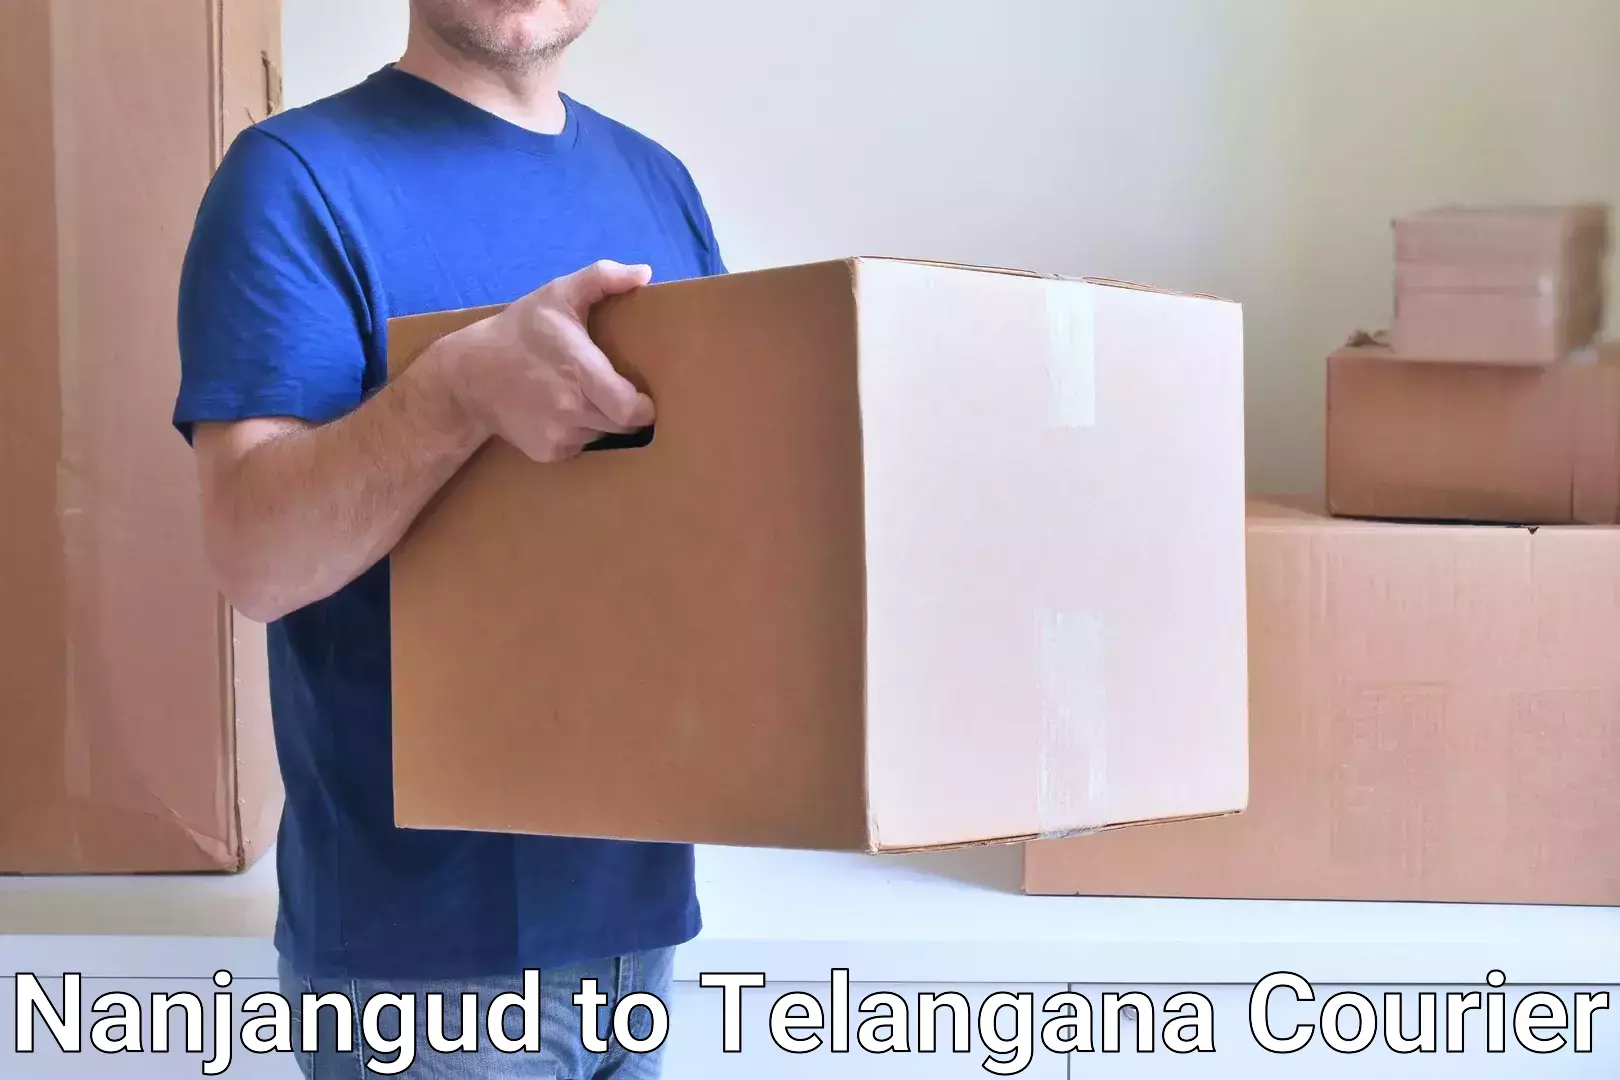 Logistics service provider Nanjangud to Nereducharla